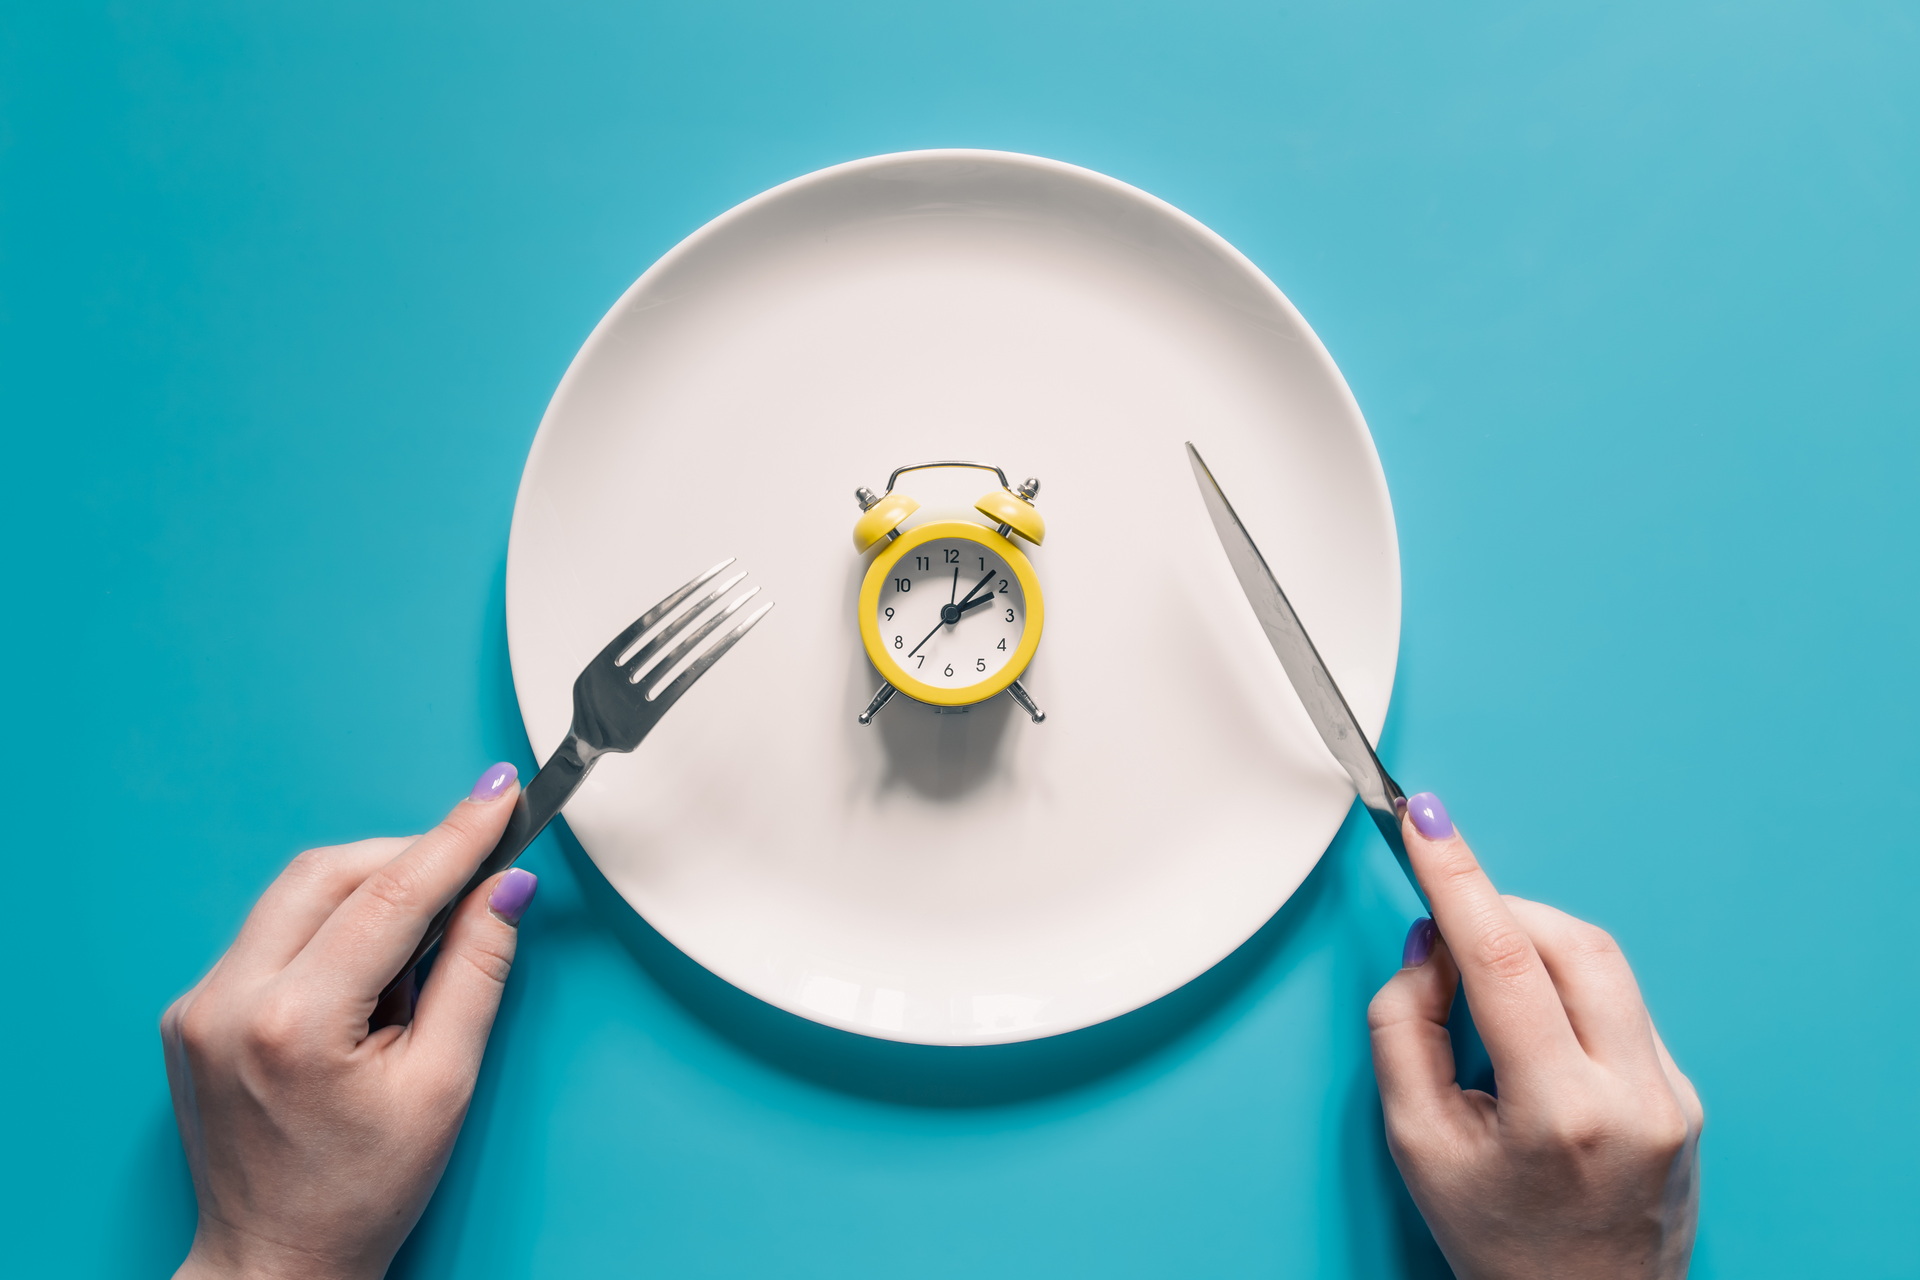 hands-holding-knife-fork-alarm-clock-plate-blue-background